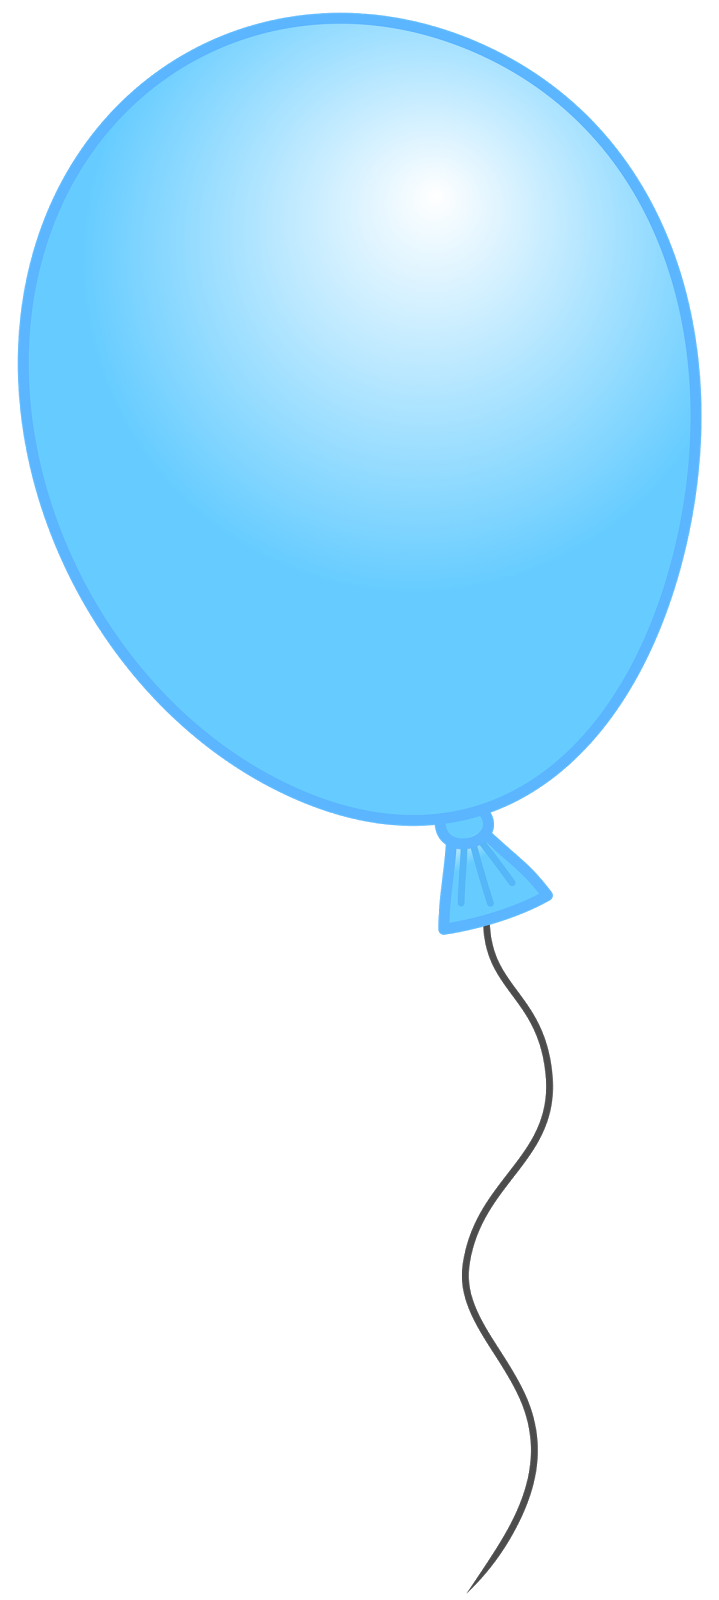 Único balão livre PNG imagem